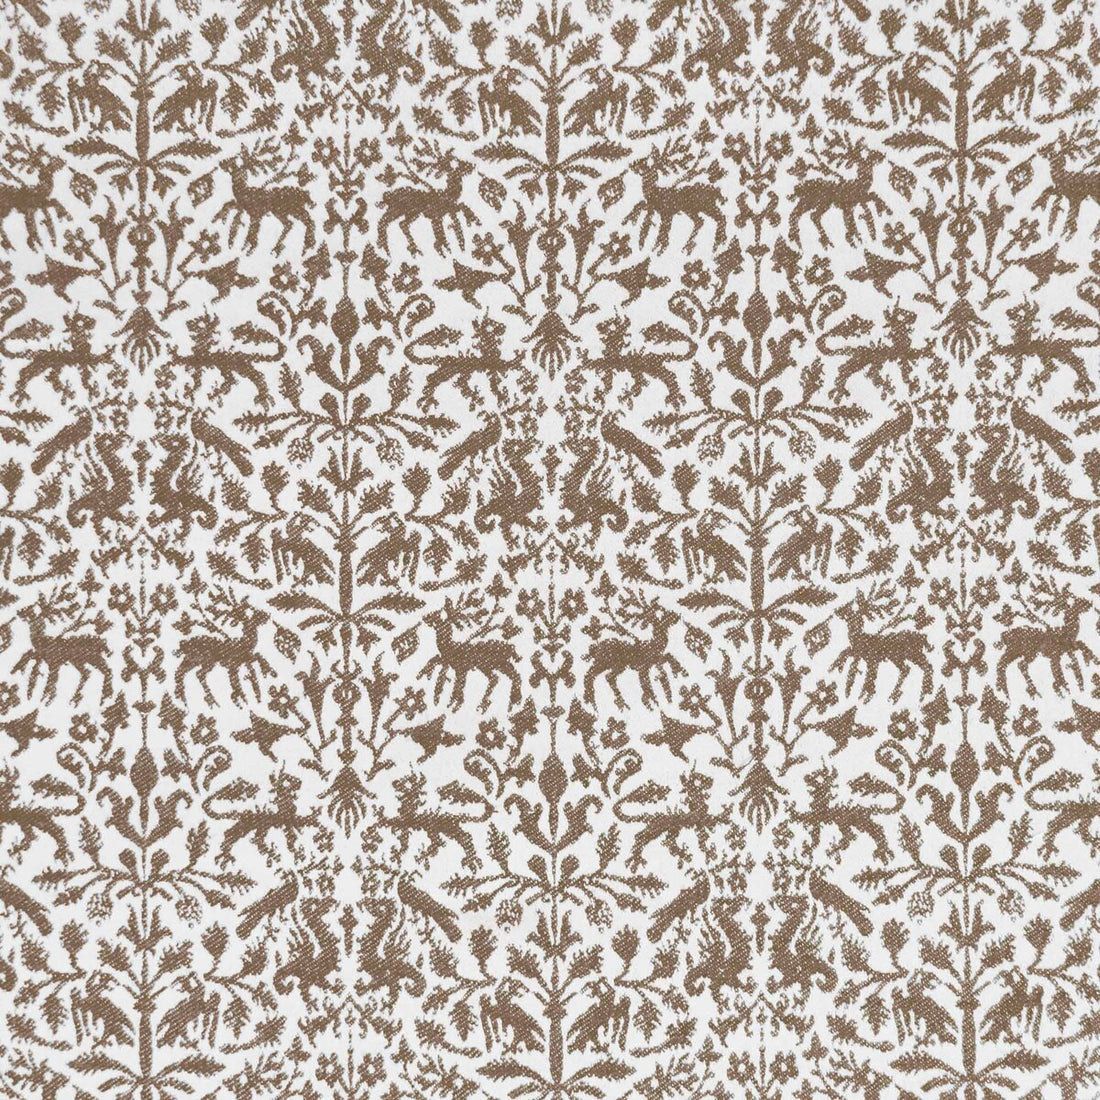 Augusta Emerita fabric in tabaco color - pattern LCT1112.002.0 - by Gaston y Daniela in the Lorenzo Castillo IX Hesperia collection